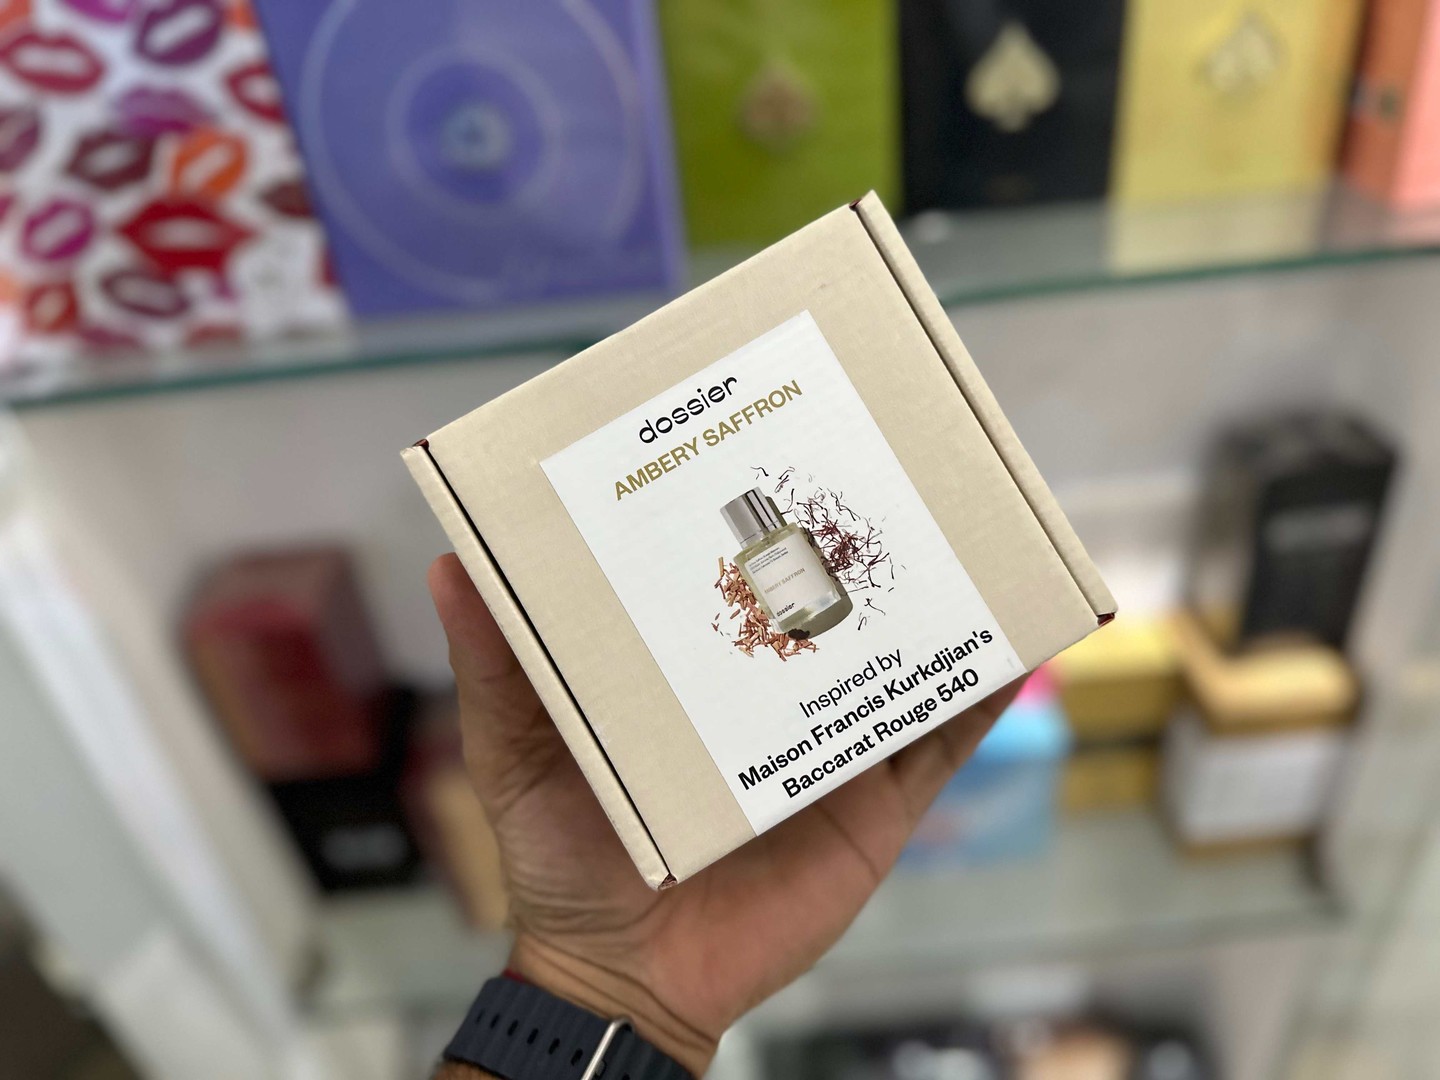 salud y belleza - Vendo Perfumes Dossier Ambery Saffron inspirado Bacarat Rouge Nuevo $ 4,300 NEG 0